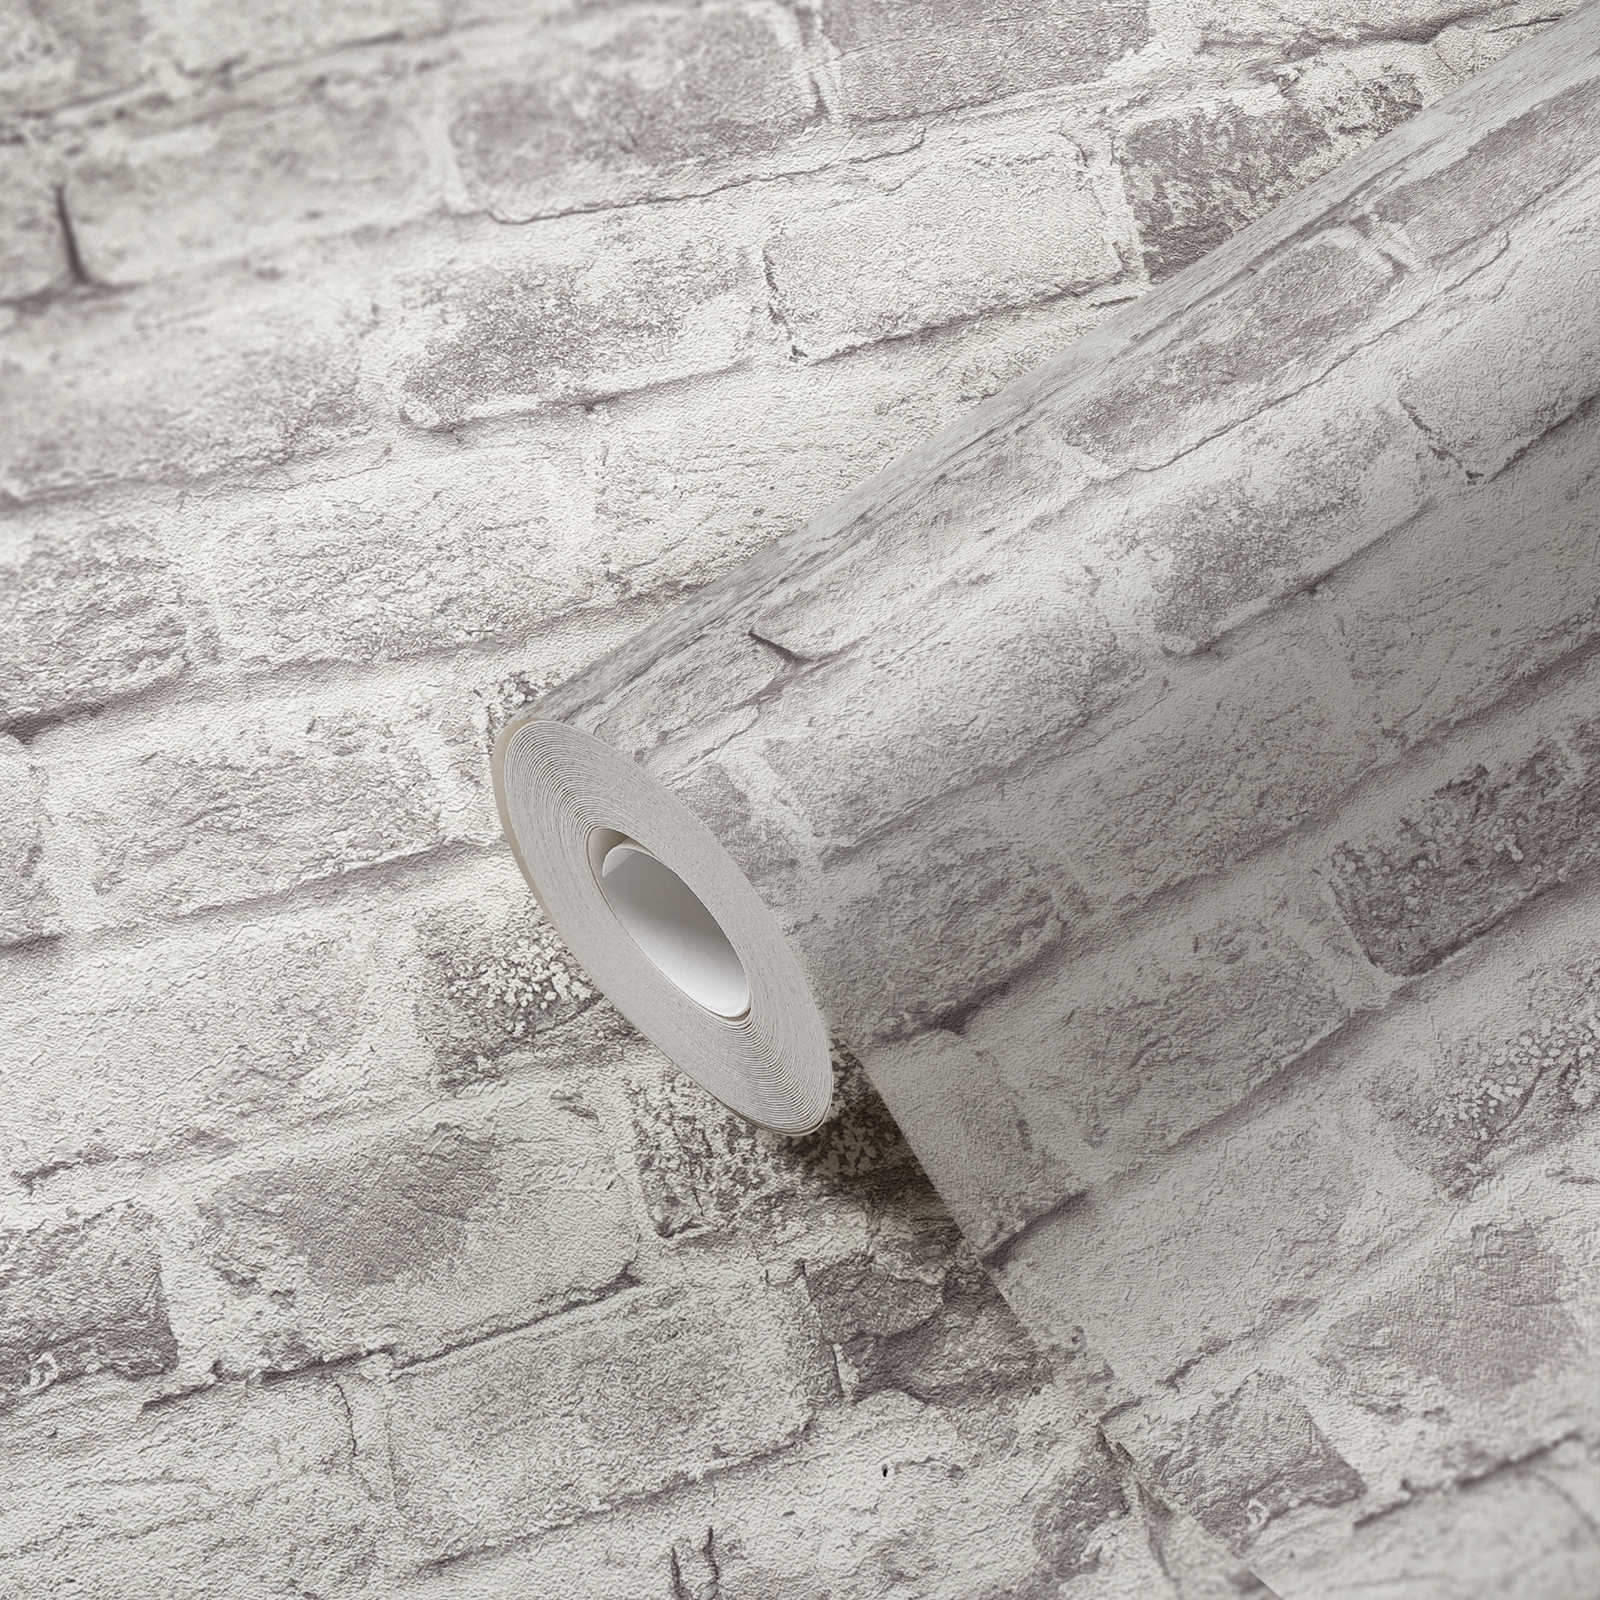             mur de briques papier peint intissé imitation pierre - gris, gris, blanc
        